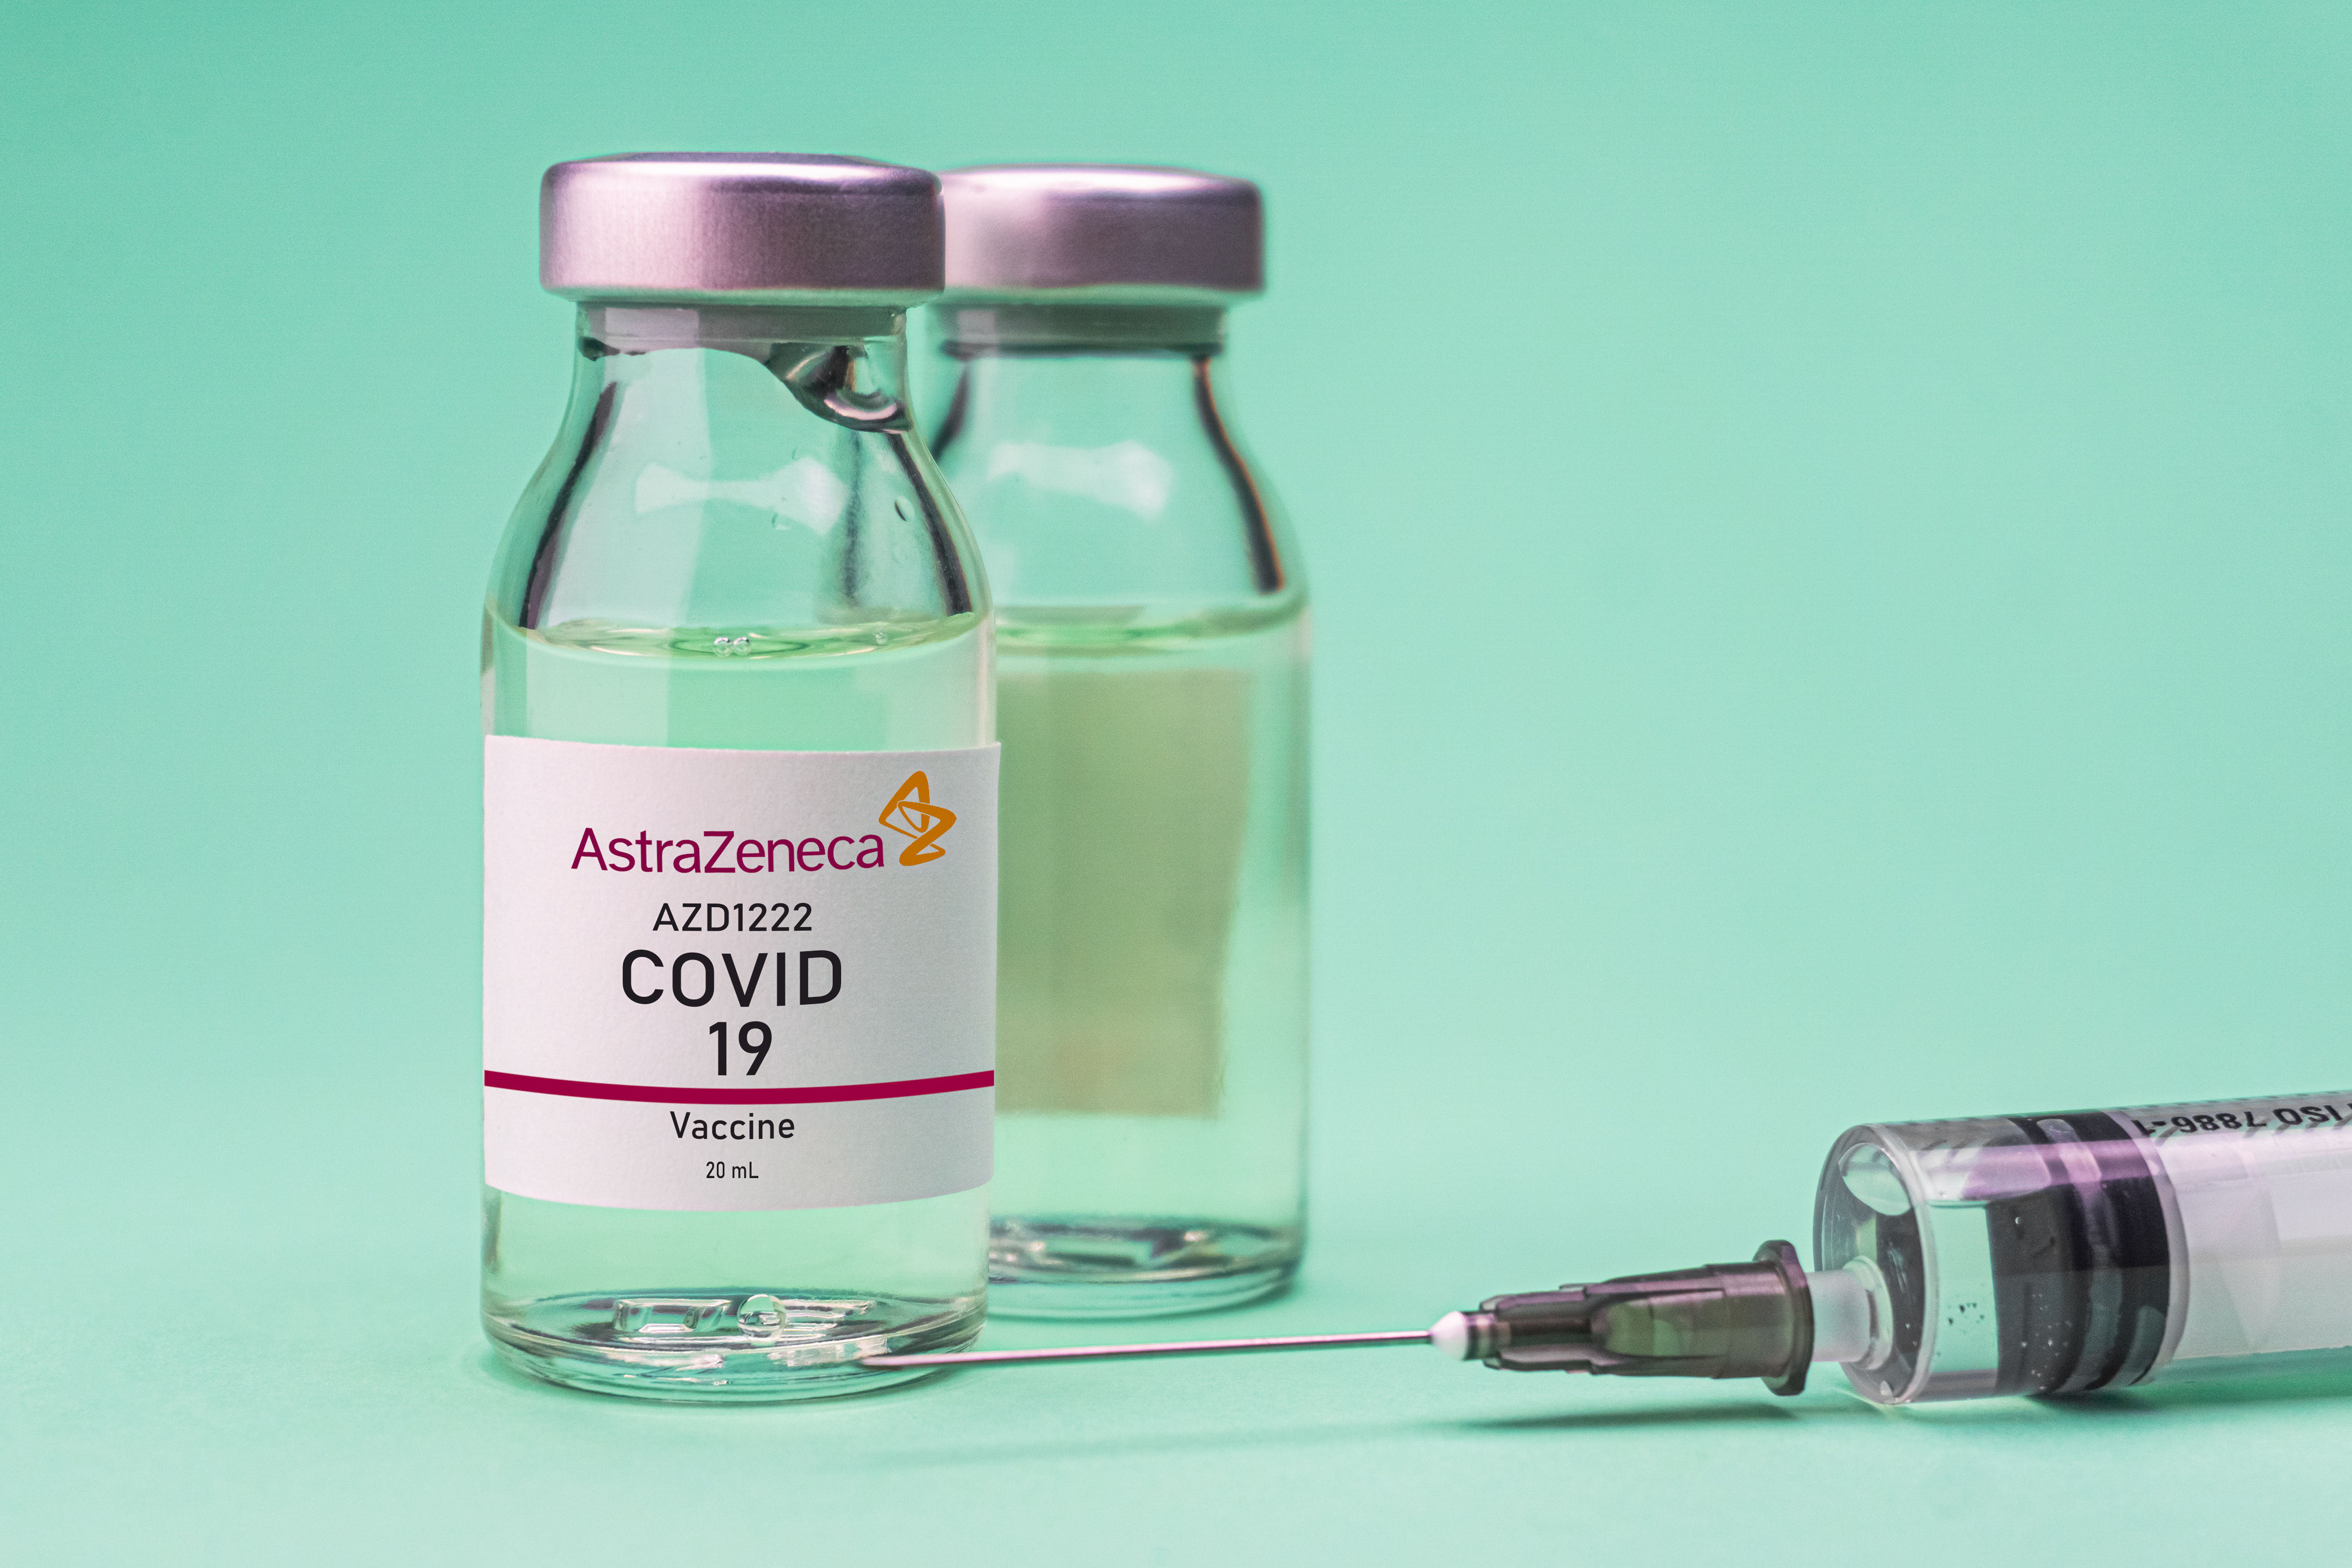 Cinci lucruri pe care trebuie să le știm despre vaccinul AstraZeneca/Oxford